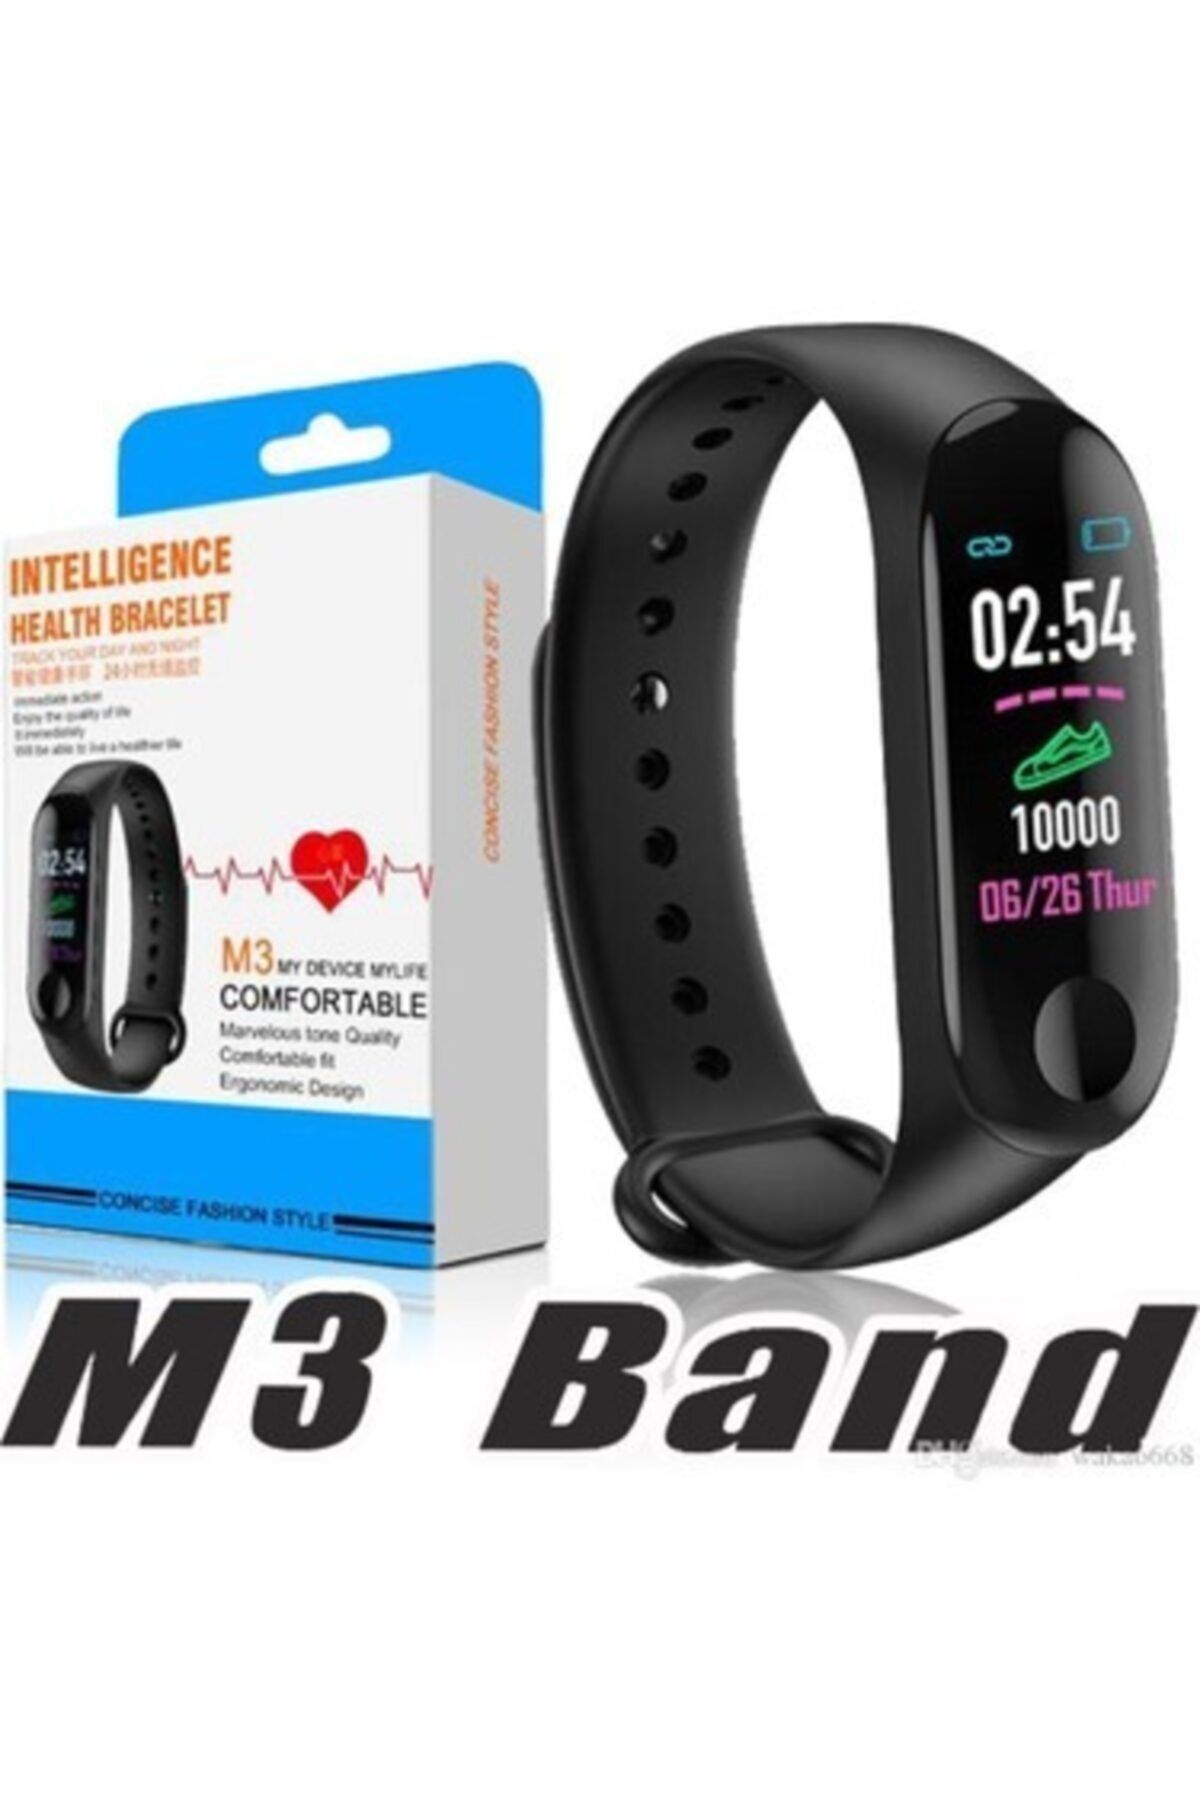 Фитнес браслет health. Фитнес браслет смарт банд м3. Фитнес браслет Smart Band m3. Смарт часы Intelligence Health Bracelet m3. Yoho m3 Plus браслет.